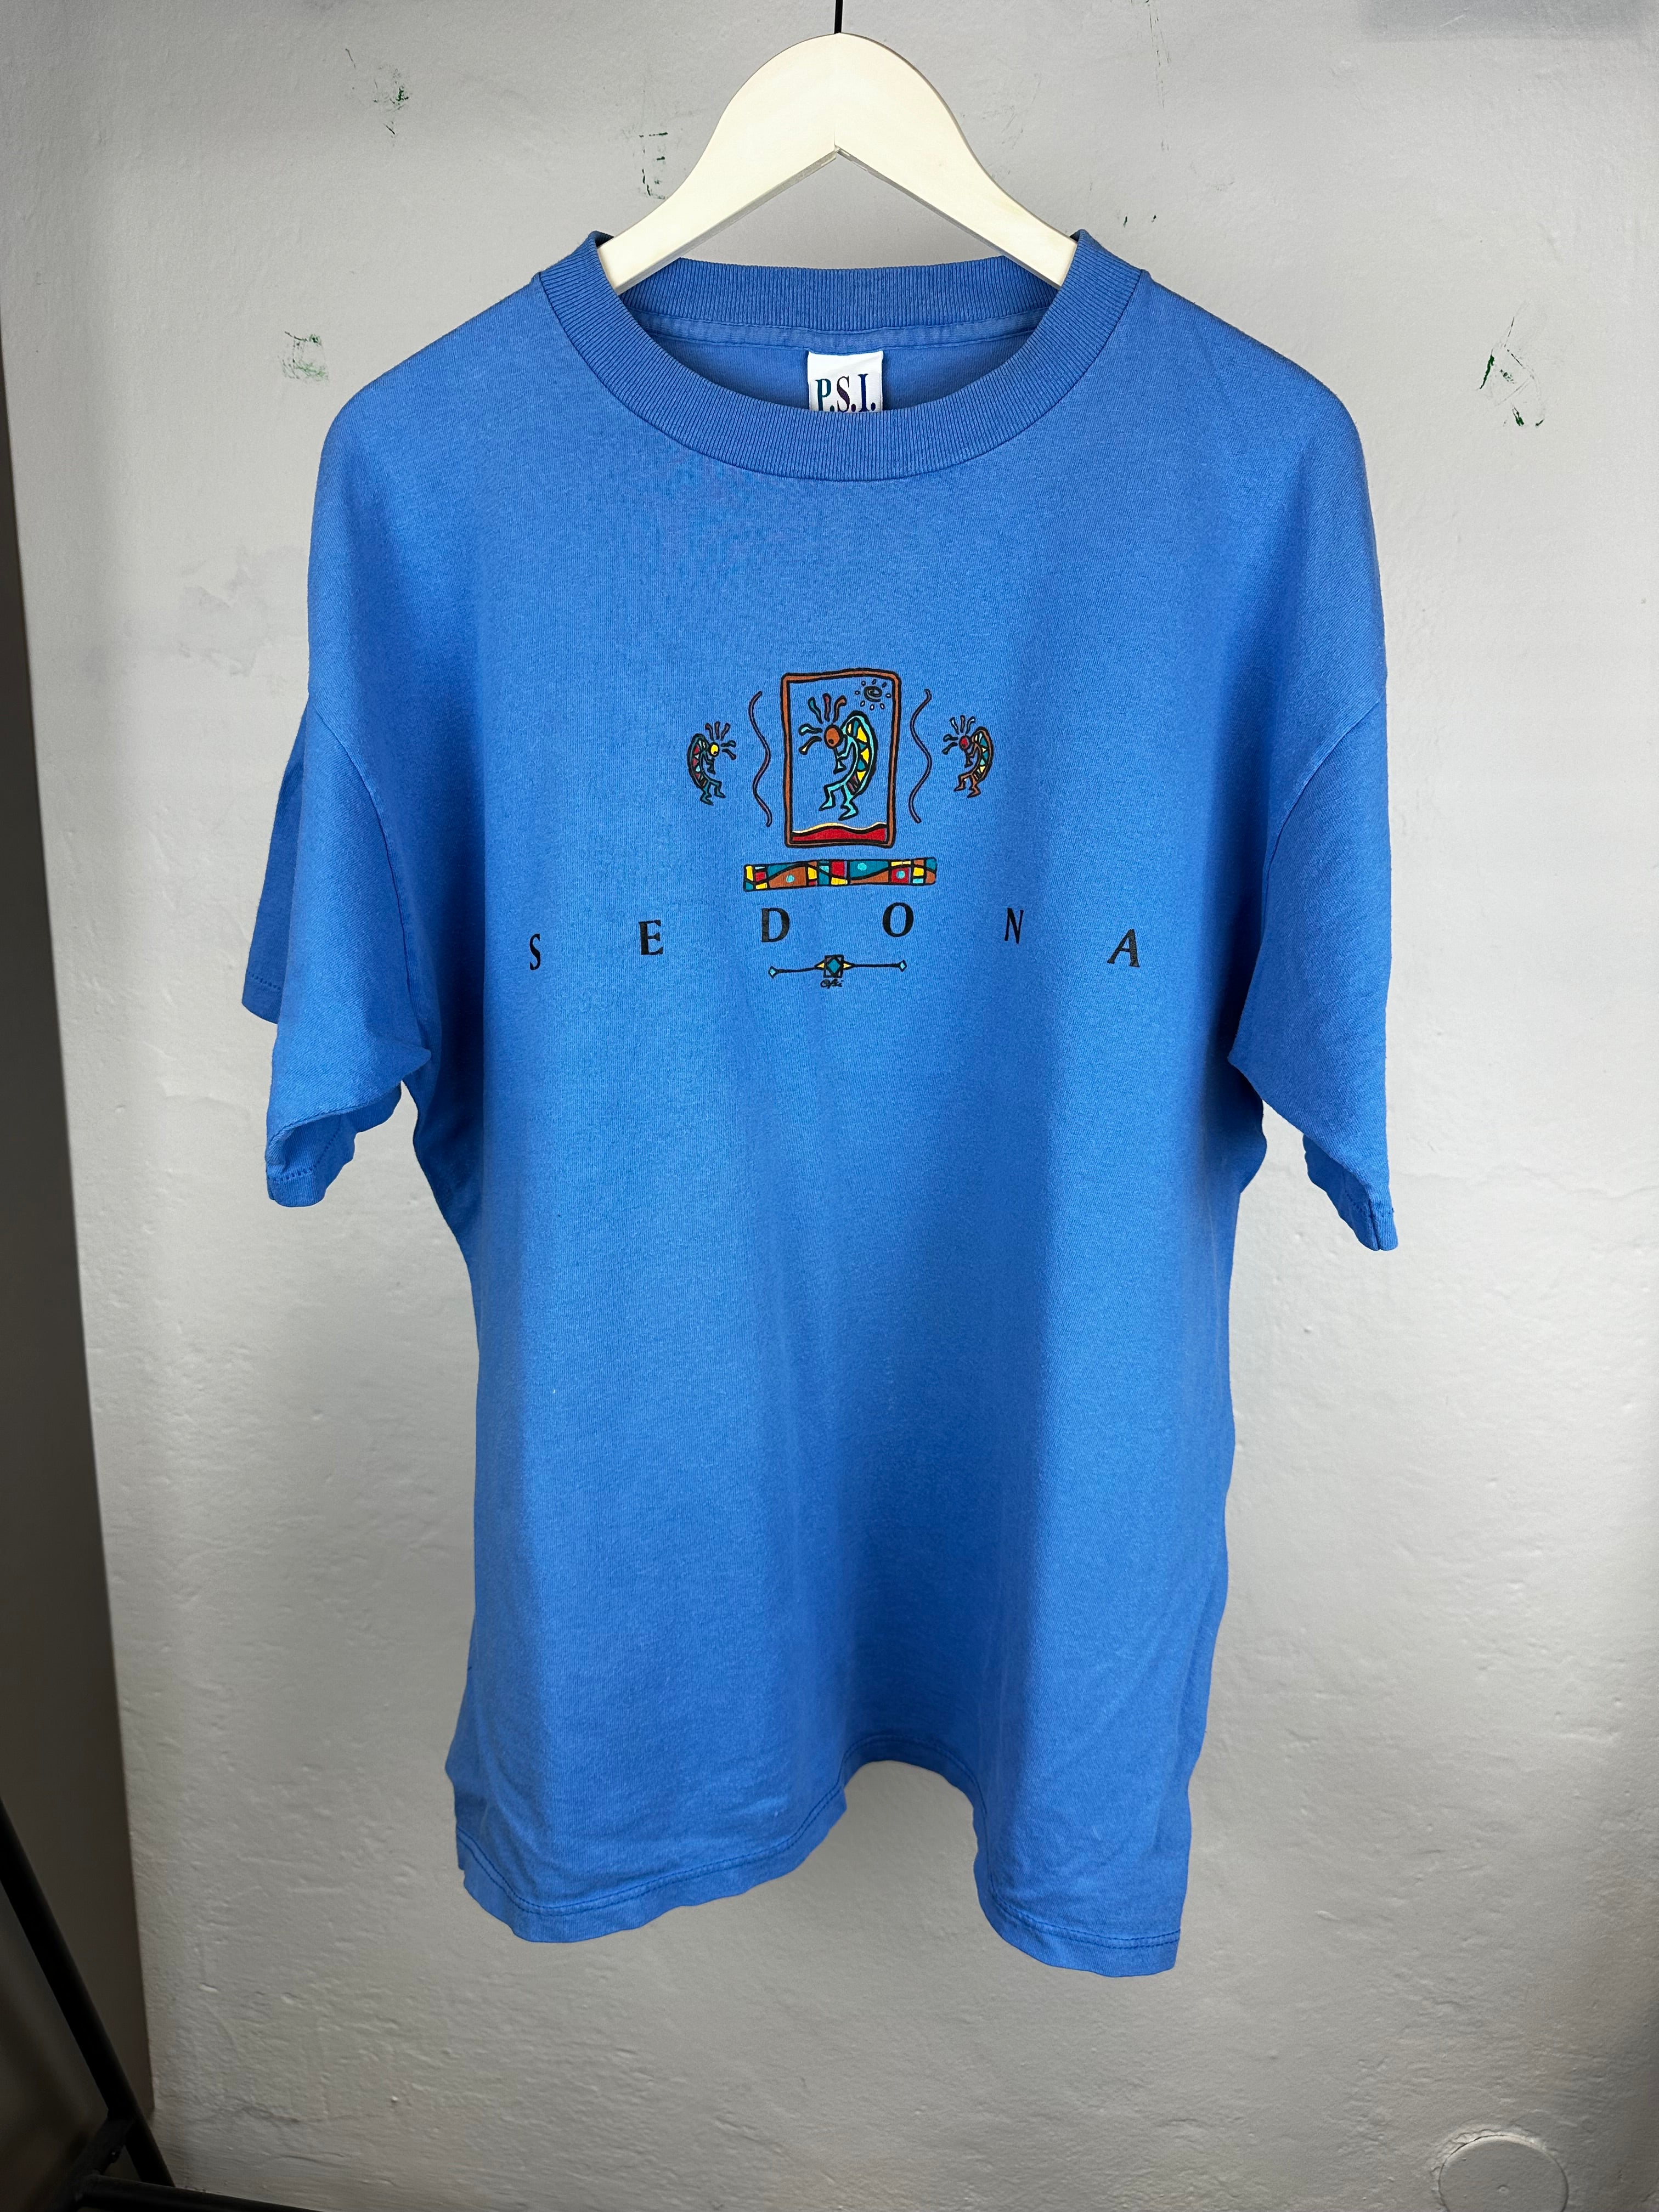 Vintage Sedona 80s t-shirt - size XL